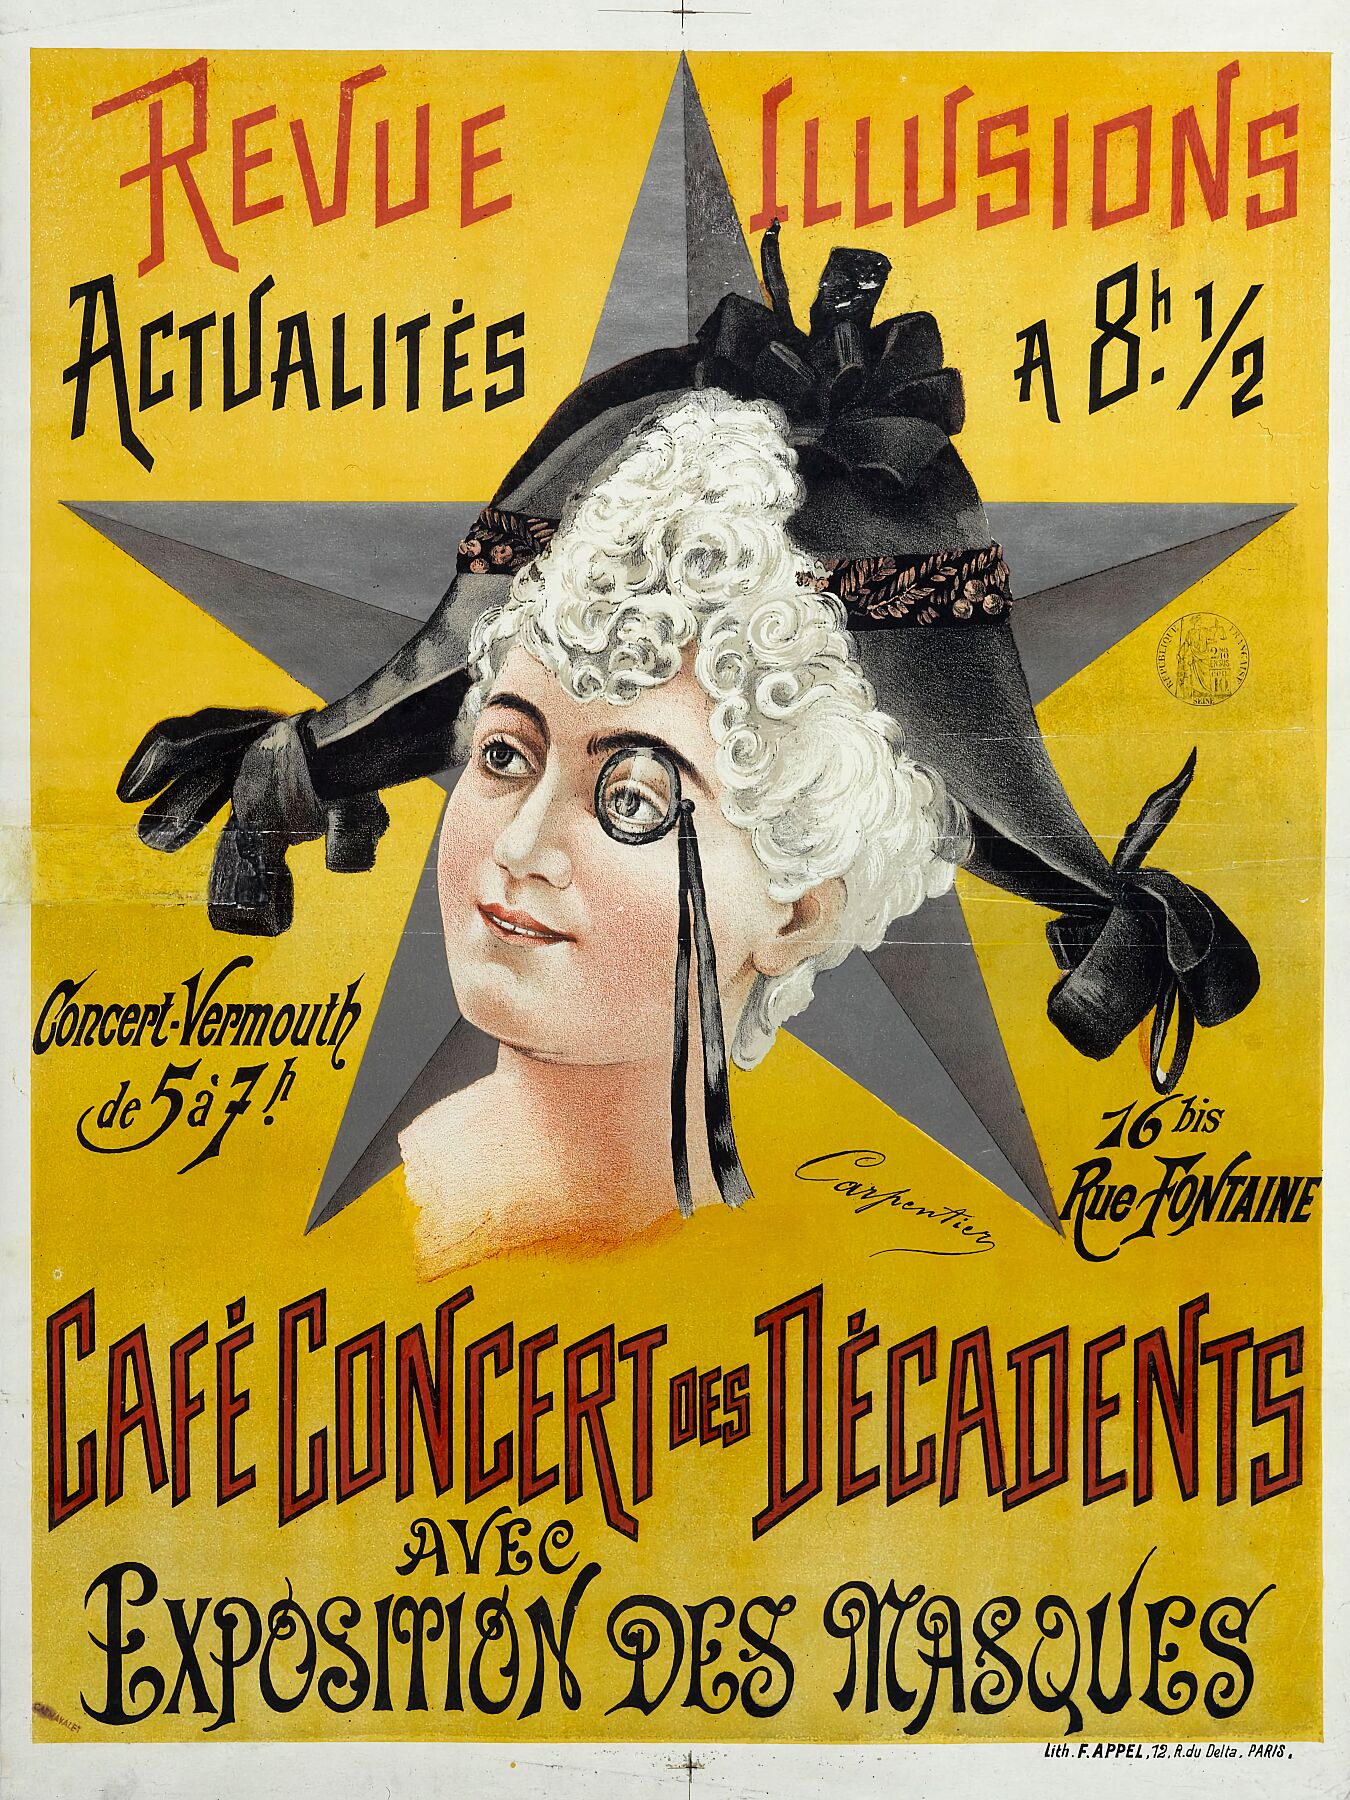 Revue Illusions_Actualités - Concert Des Decadents avec Exposition Des Masques - 1891